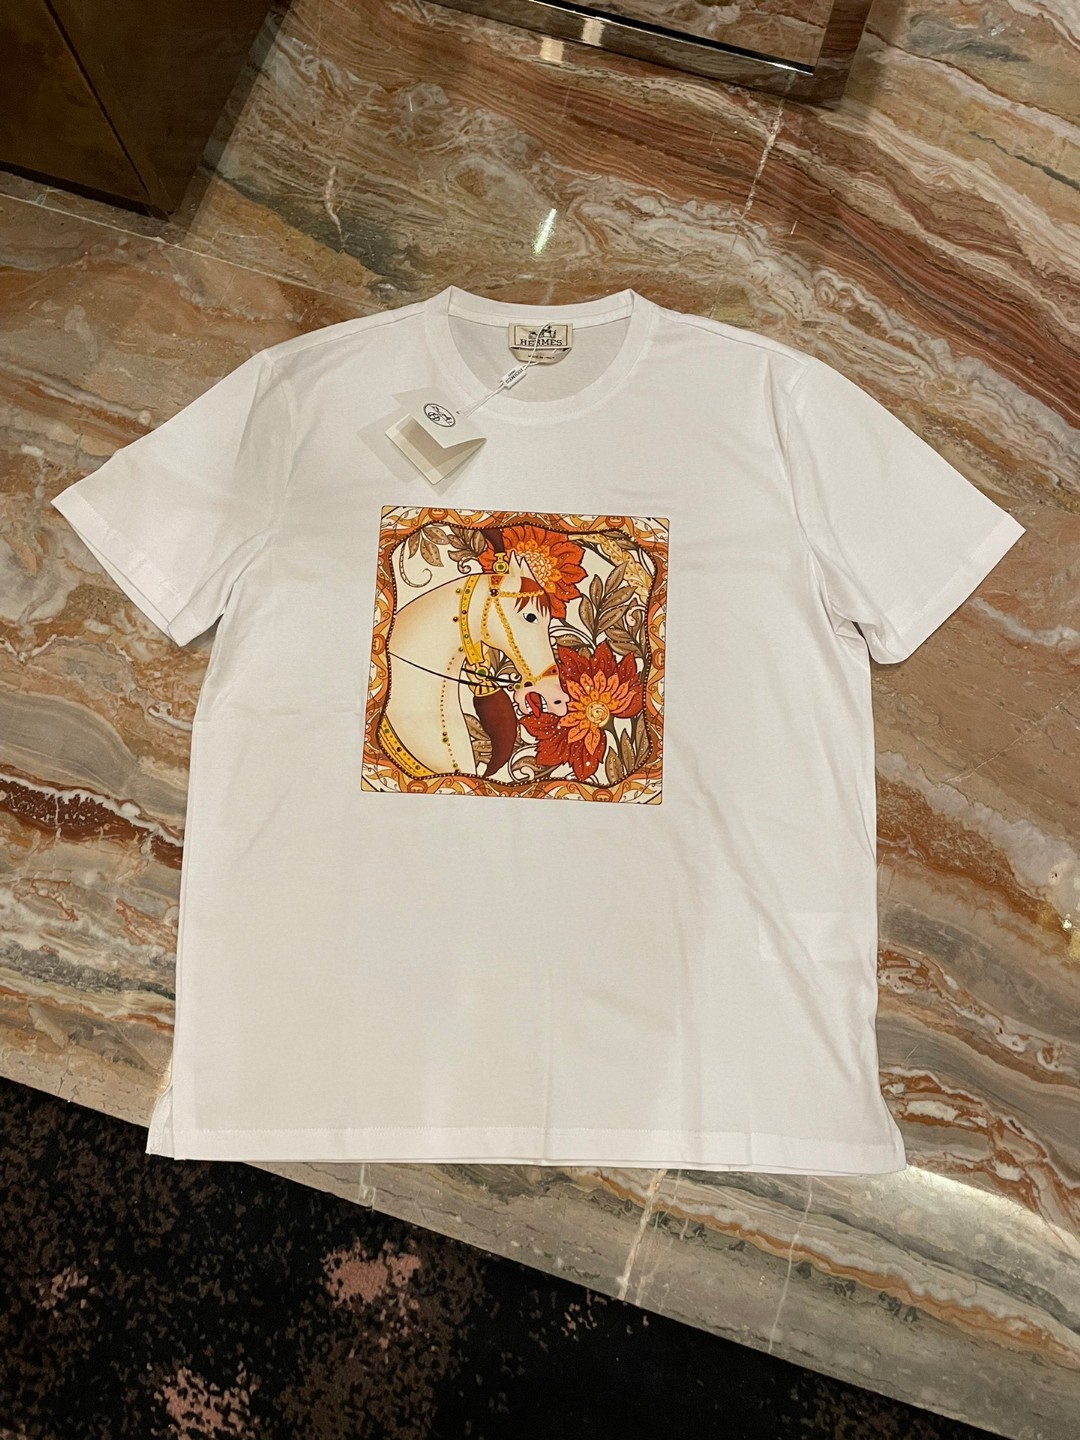 Hermes Vêtements T-Shirt Réplique de concepteur qualité supérieure
 Noir Blanc Hommes Coton mercerisé Fashion Manches courtes